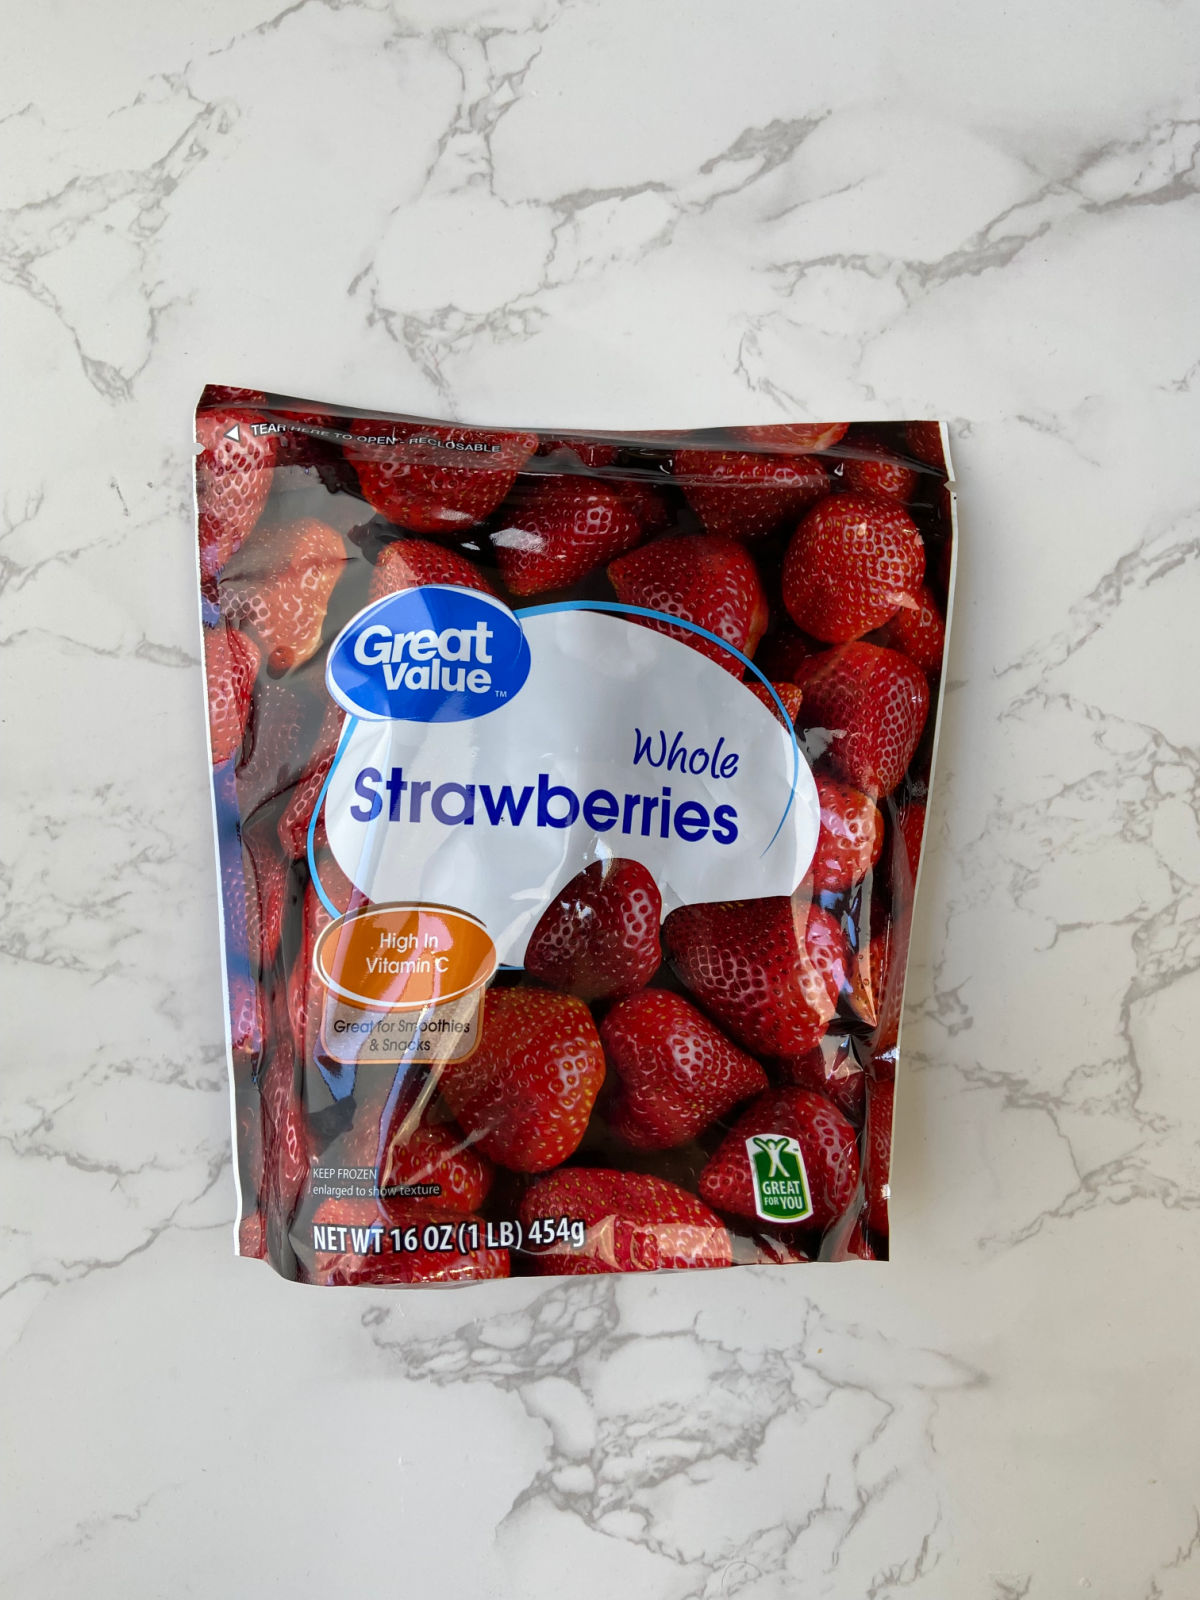 bag of walmart brand frozen strawberries. 